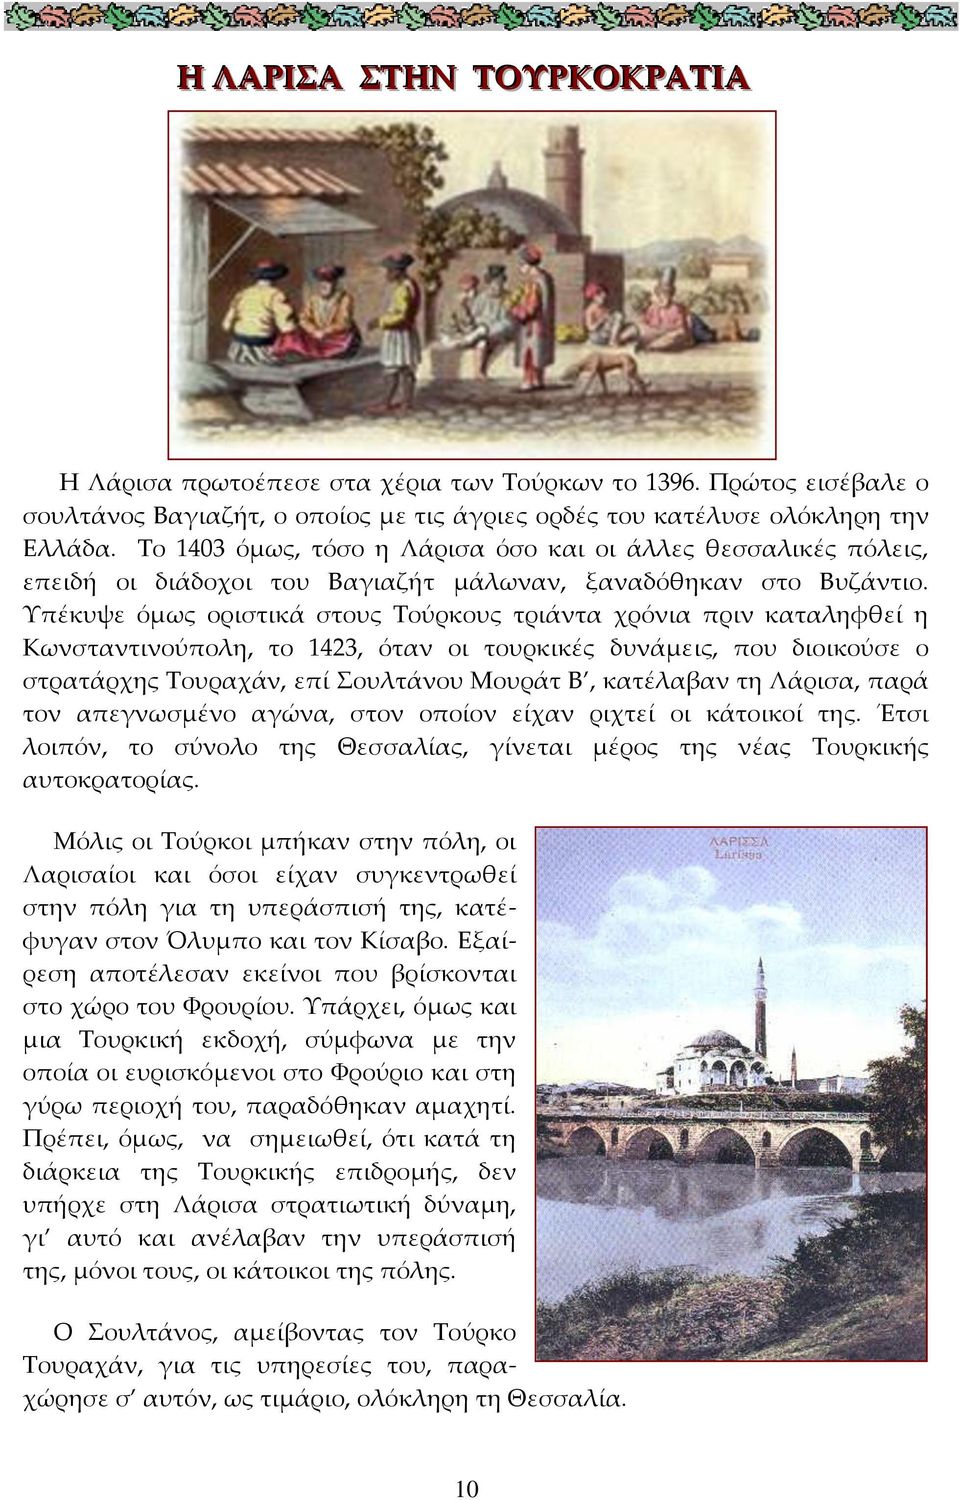 Υπέκυψε όμως οριστικά στους Τούρκους τριάντα χρόνια πριν καταληφθεί η Κωνσταντινούπολη, το 1423, όταν οι τουρκικές δυνάμεις, που διοικούσε ο στρατάρχης Τουραχάν, επί Σουλτάνου Μουράτ Β, κατέλαβαν τη